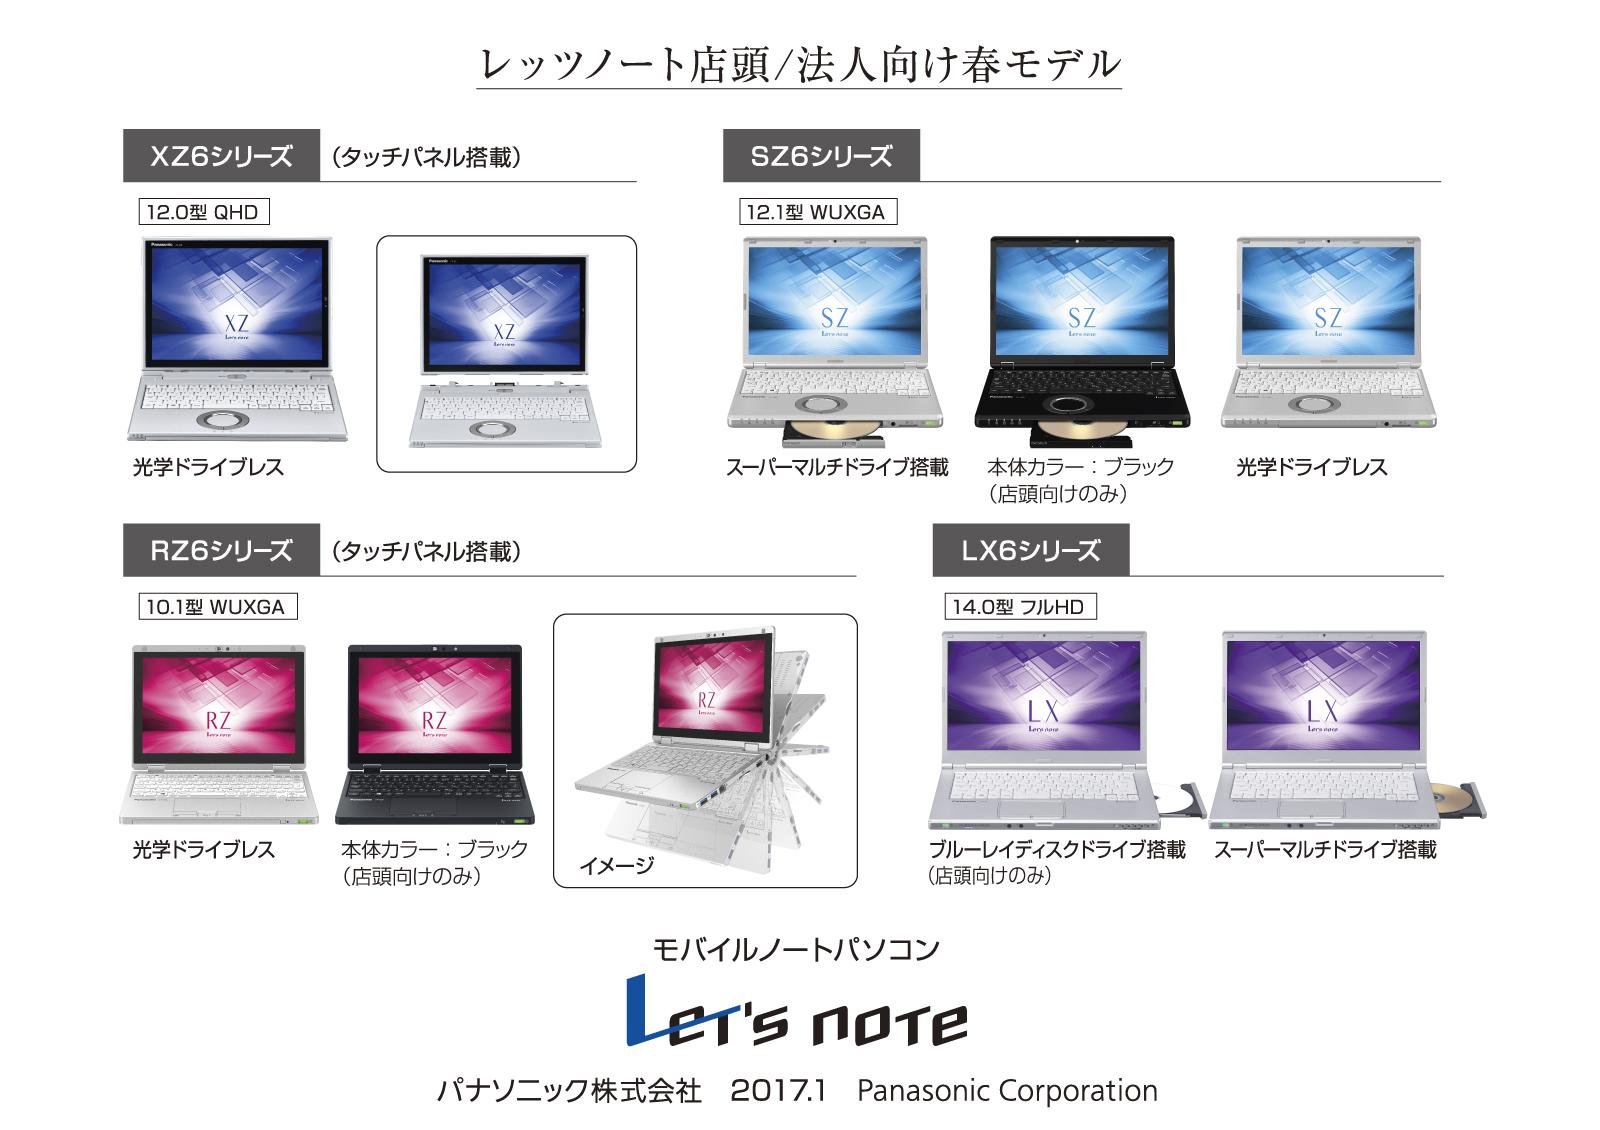 モバイルパソコン 「Let's note」 個人店頭/法人向け 春モデル発売 